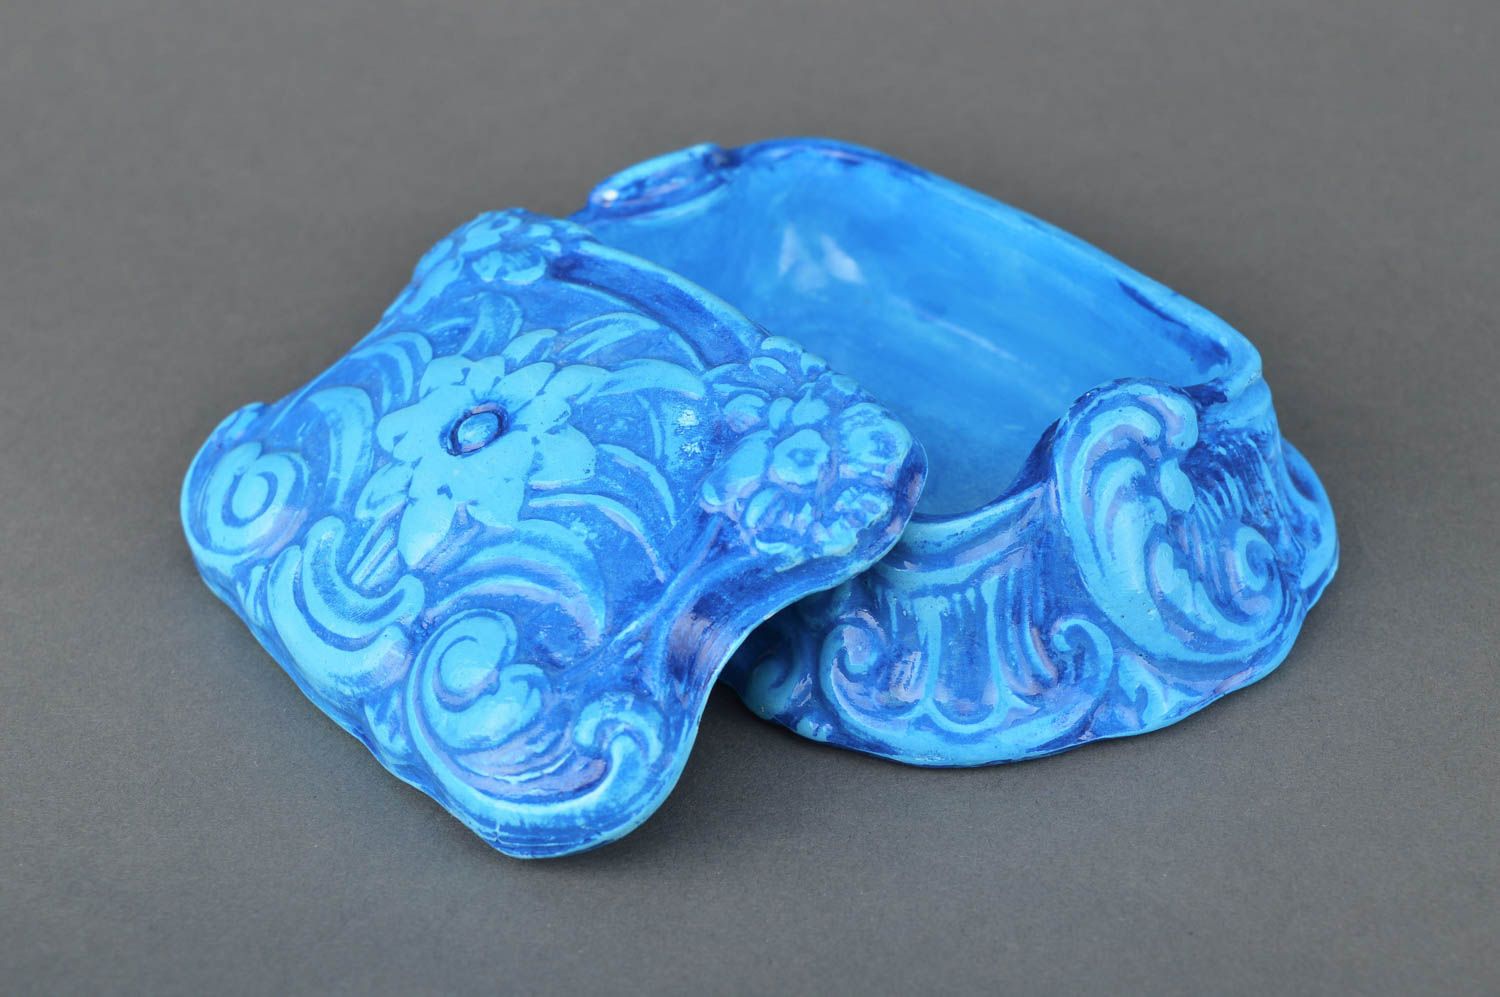 Шкатулка из гипса ручной работы винтажная шкатулка синяя подарок женщине фото 3